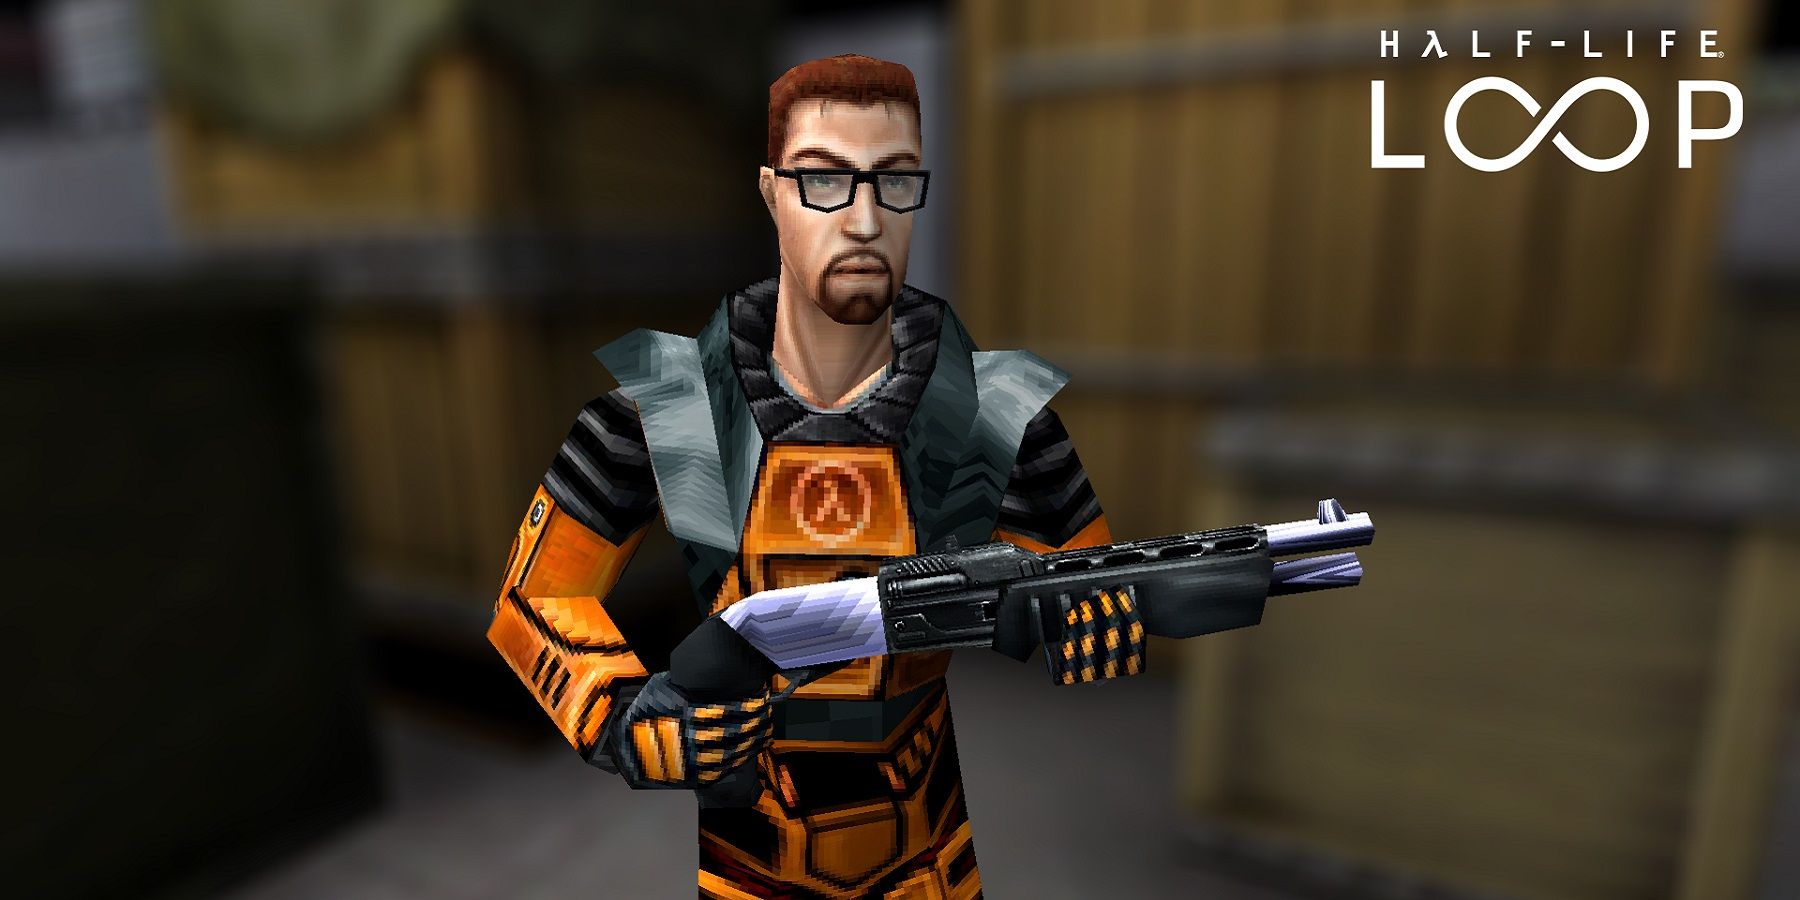 Image from fan game Half-Life: Loop, showing Gordon Freeman holding a shotgun.